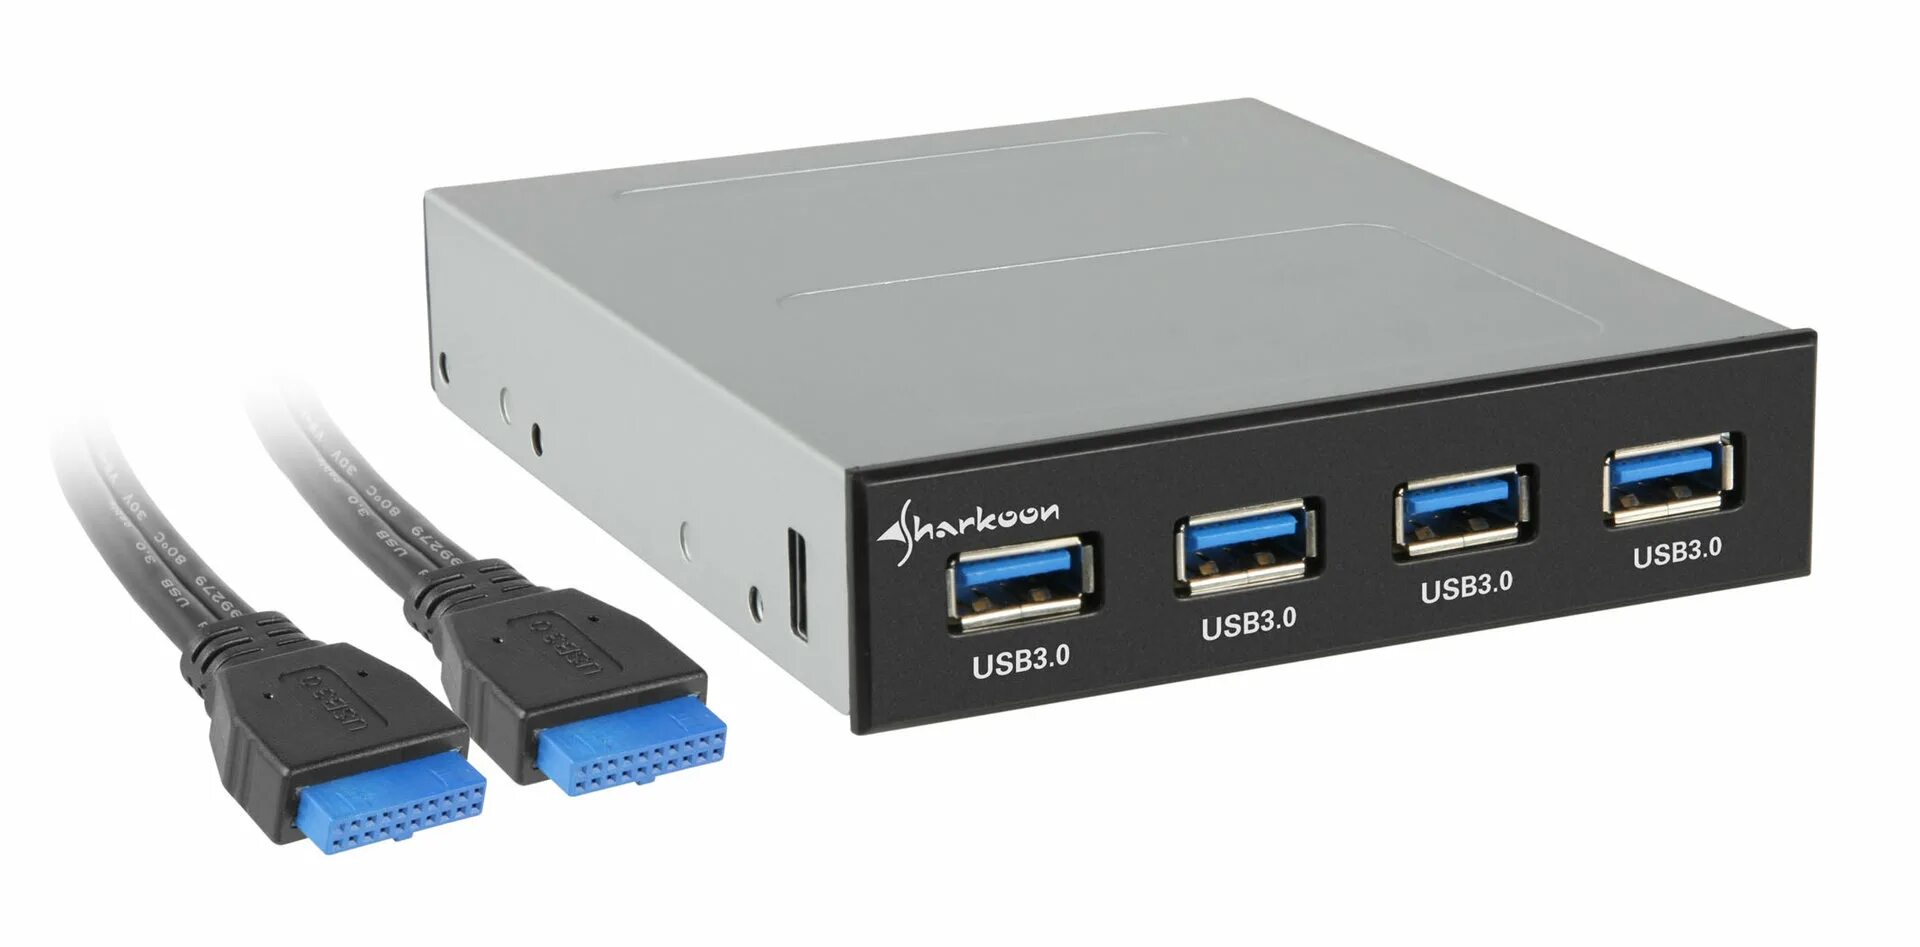 USB 3,0 hdd3 Dock. USB 3.0 f1802. SAS USB 3.0. USB 3.0 И USB 2.0. Usb 4 канала